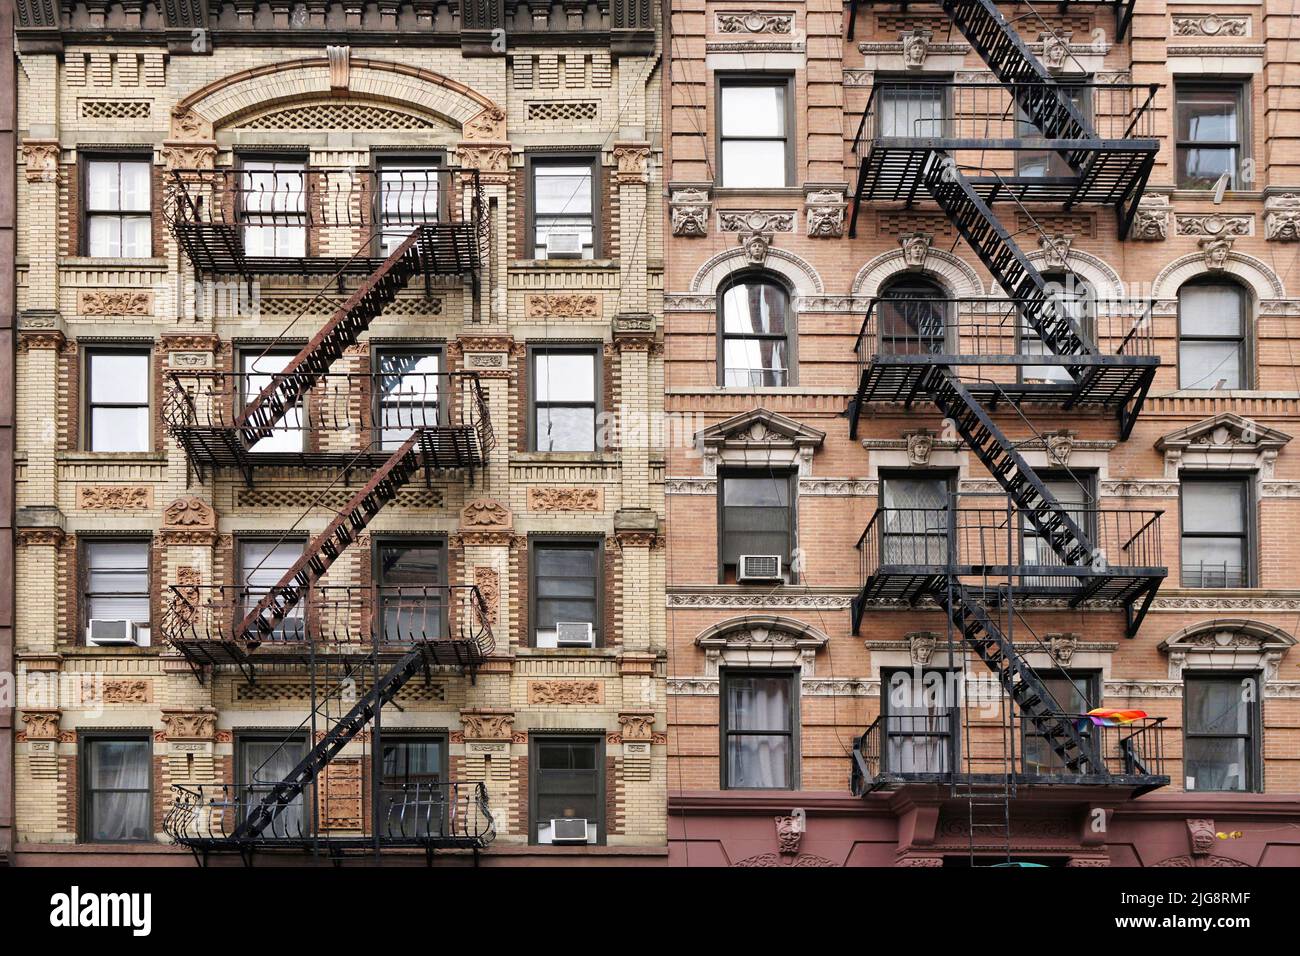 Edificio de apartamentos de estilo antiguo de Manhattan con ornamentado tallado de piedra decorativa y escaleras exteriores de escape de incendios Foto de stock